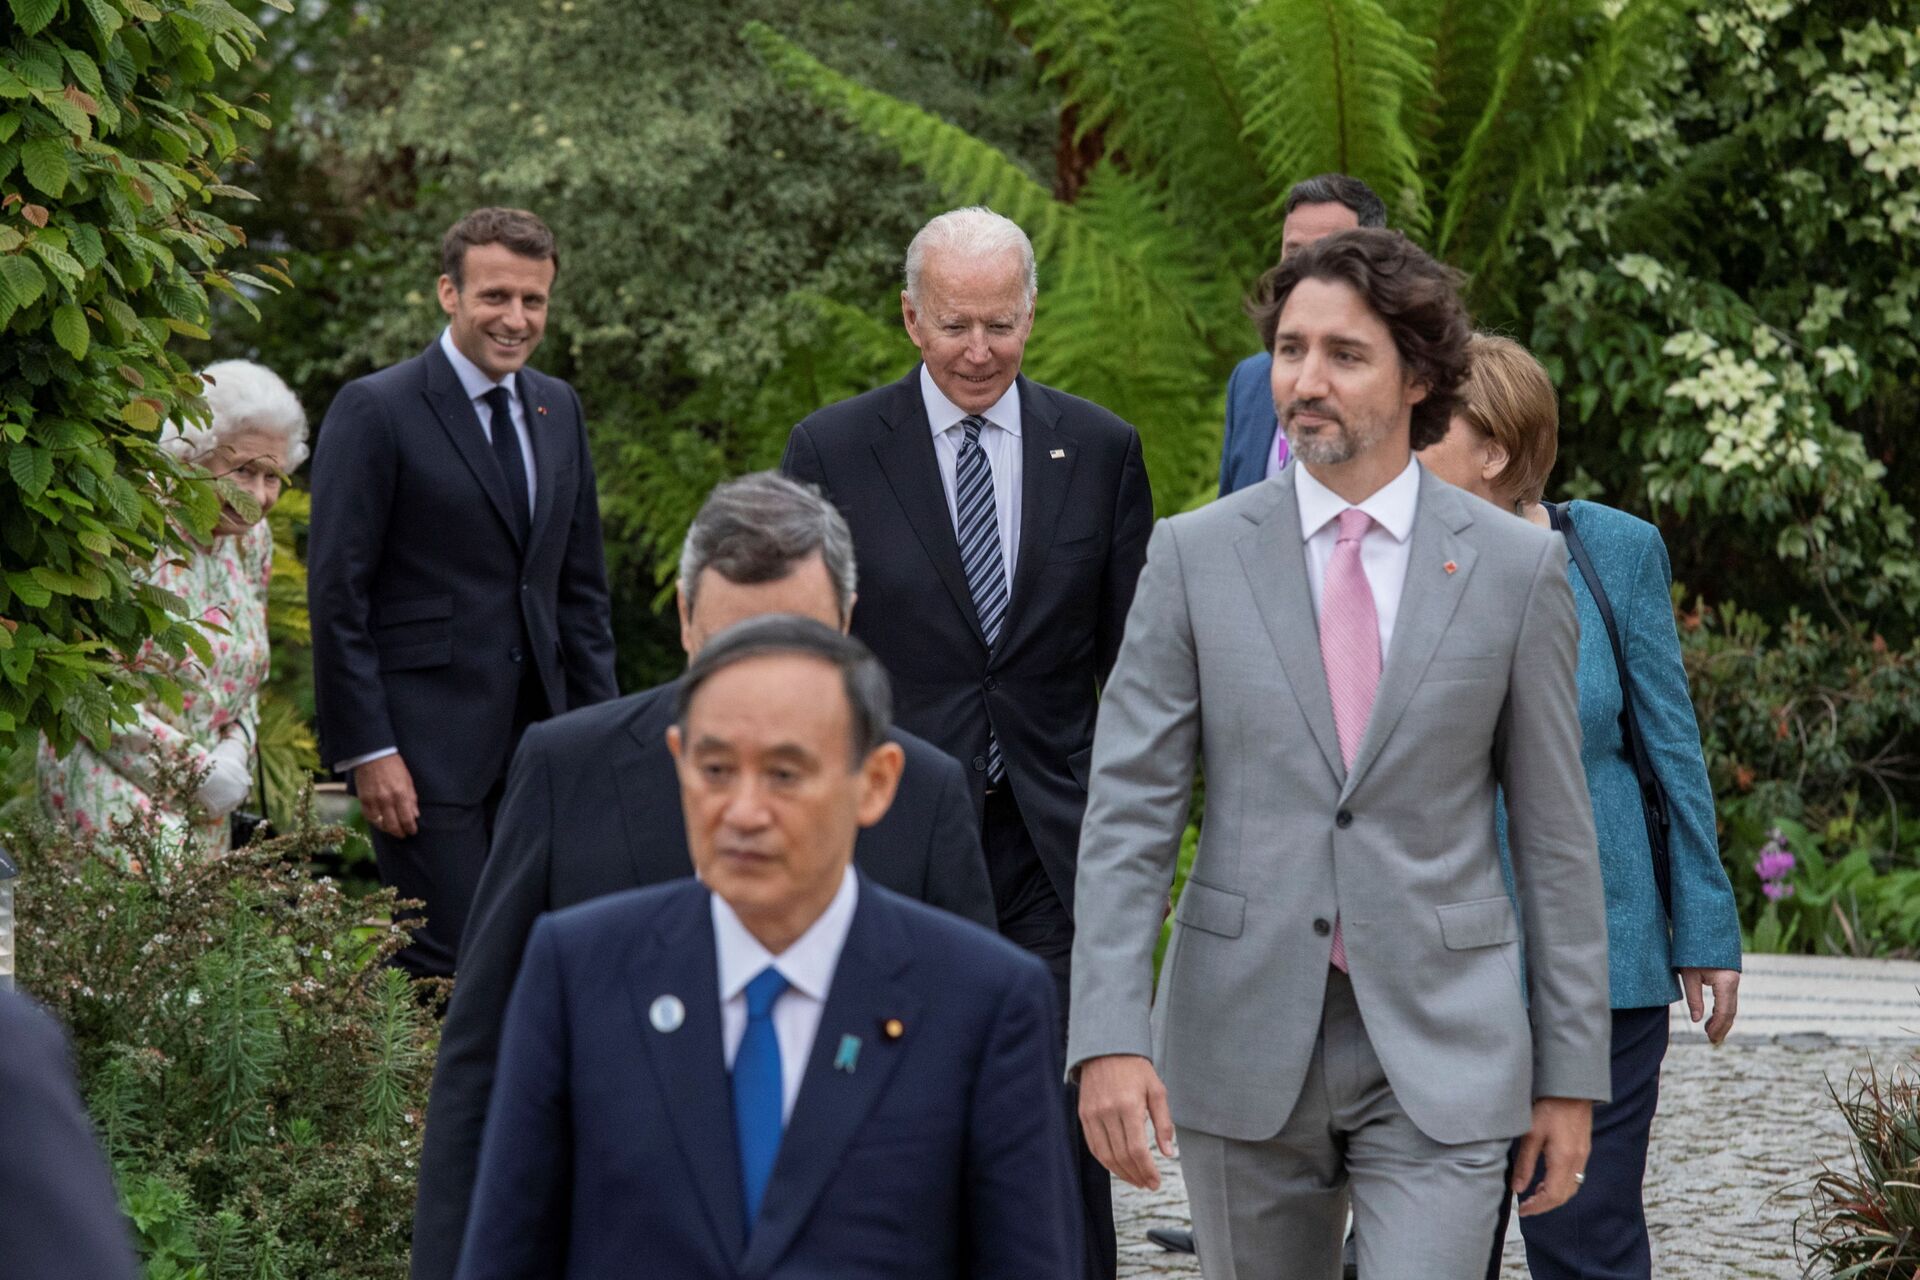 Liệu G7 có thể giúp các nước châu Á như Trung Quốc đang làm? - Sputnik Việt Nam, 1920, 25.06.2021